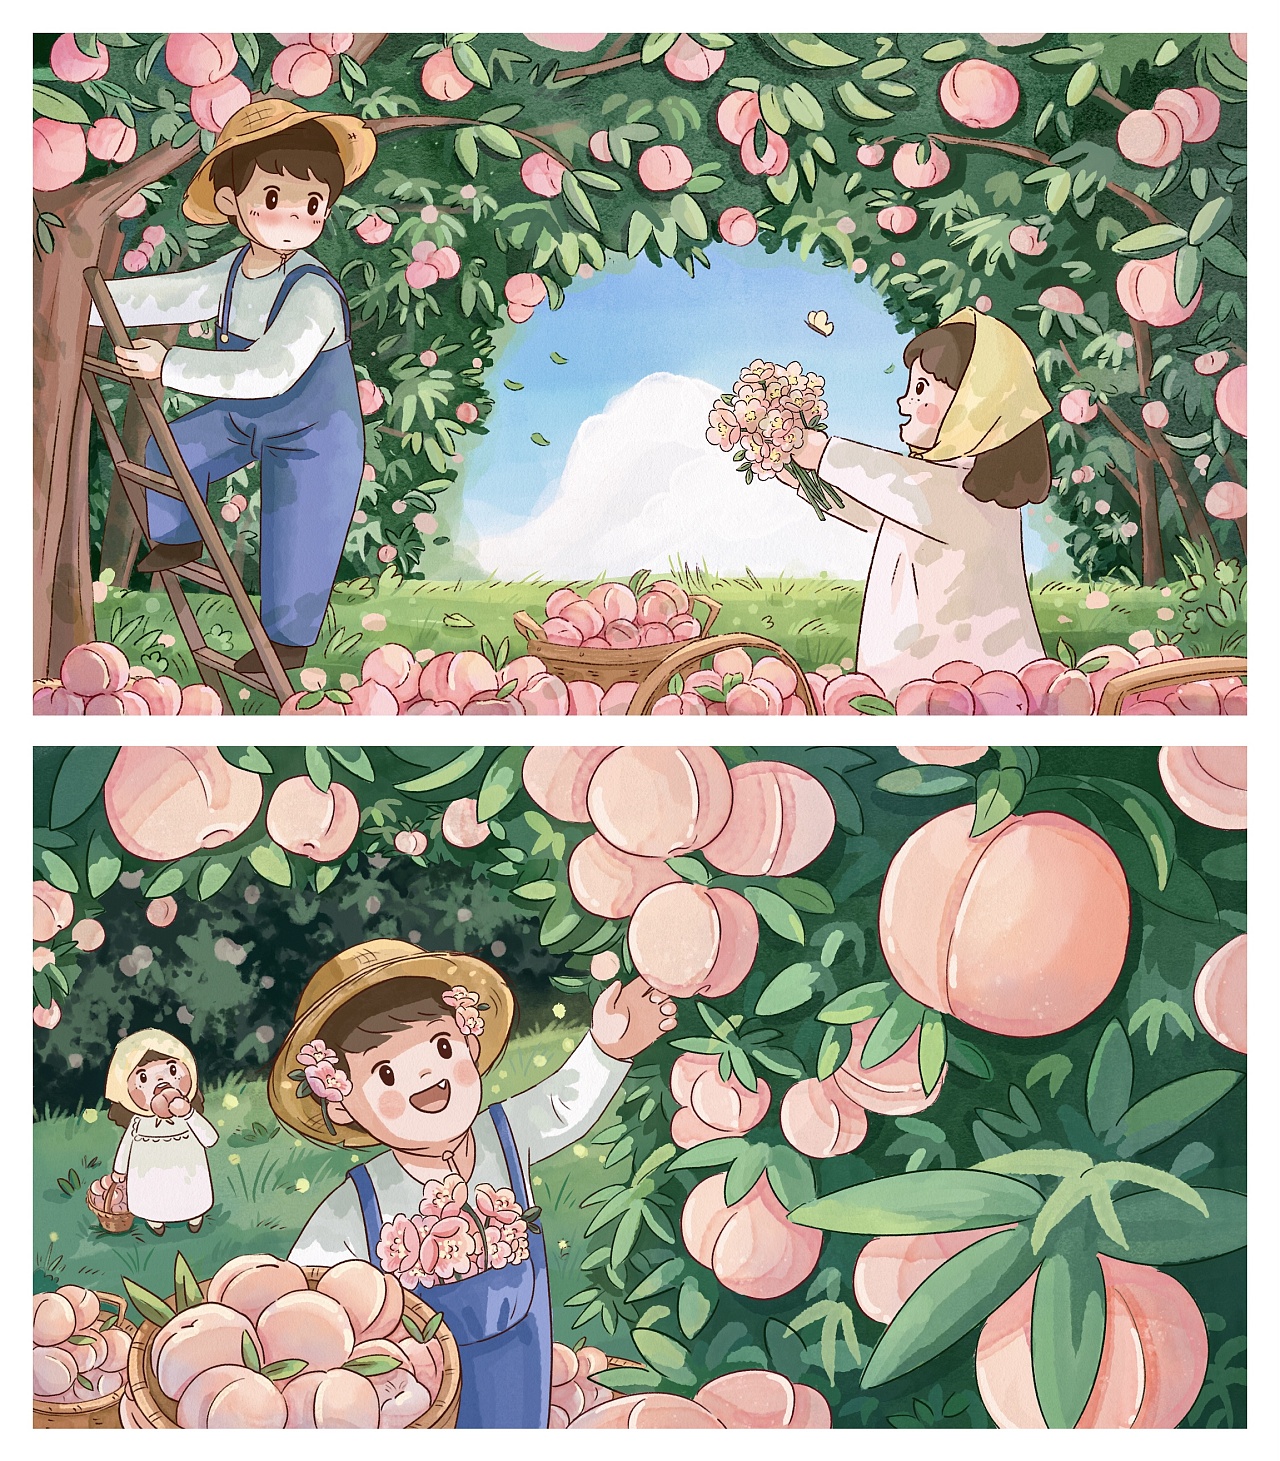 桃子树 卡通图片图片